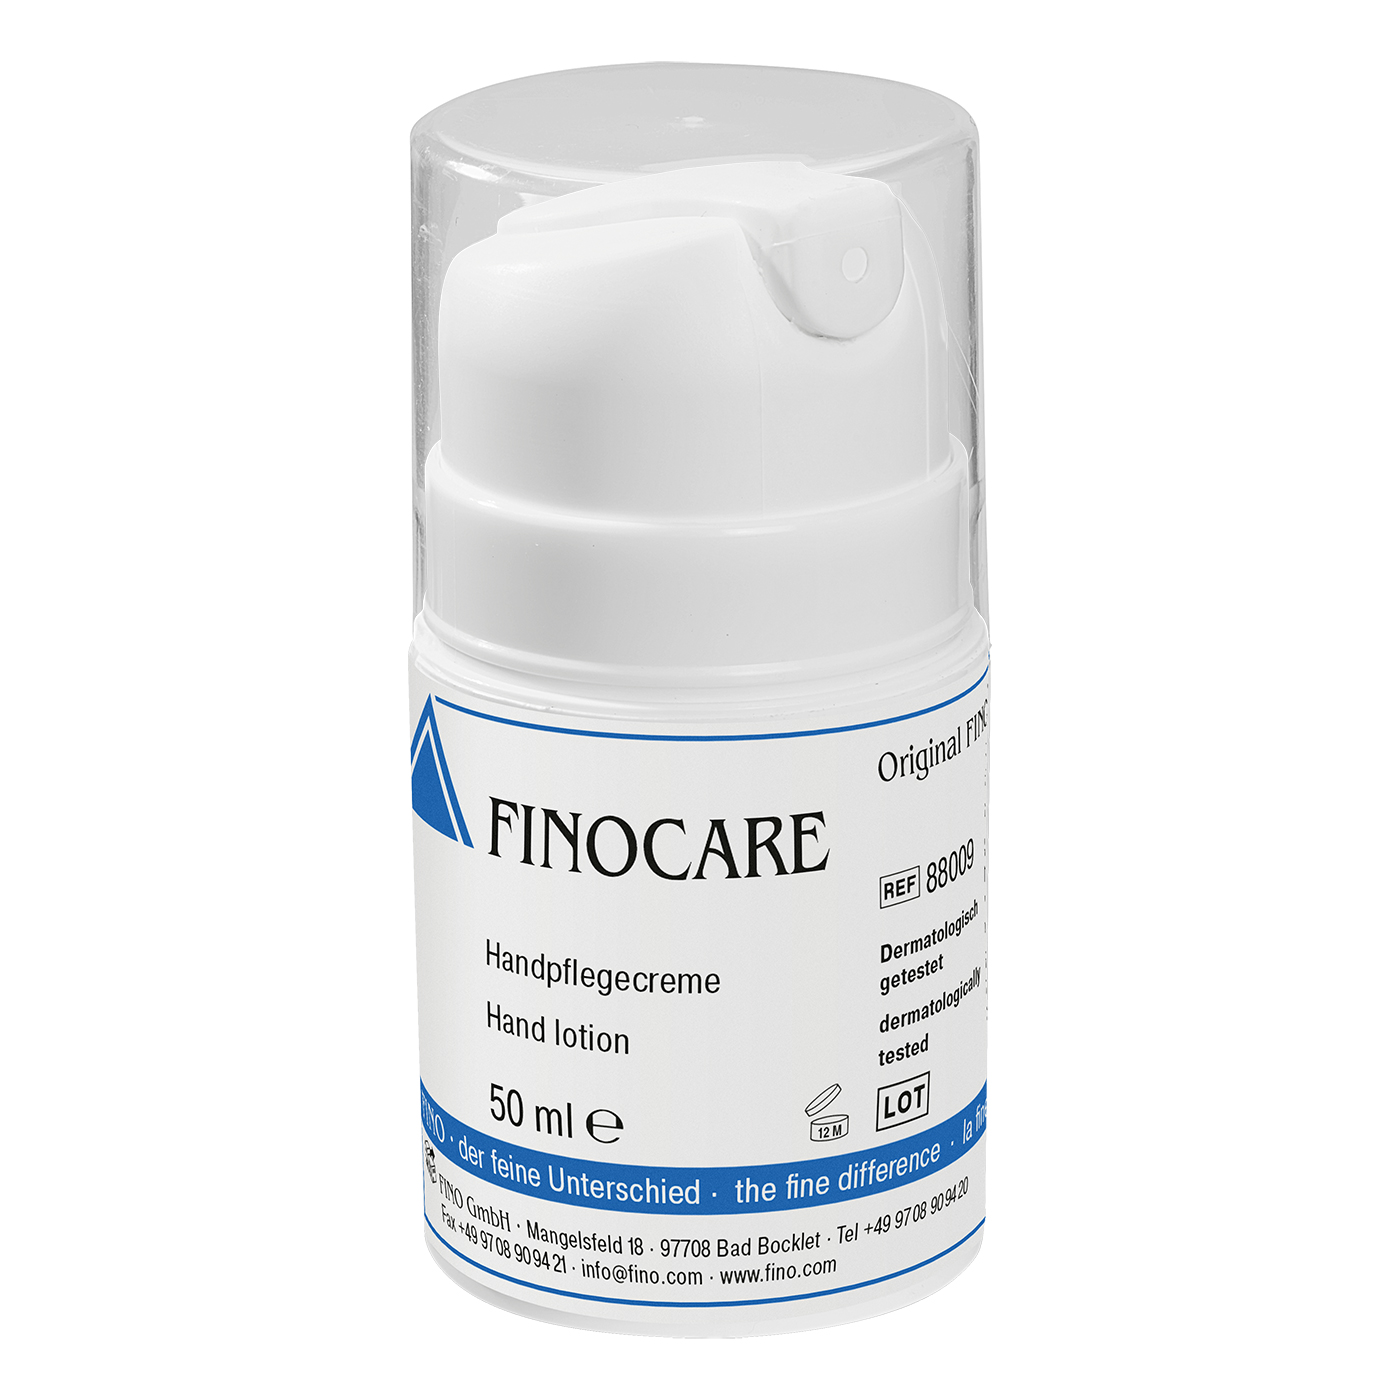 FINOCARE hand care cream - 50 ml